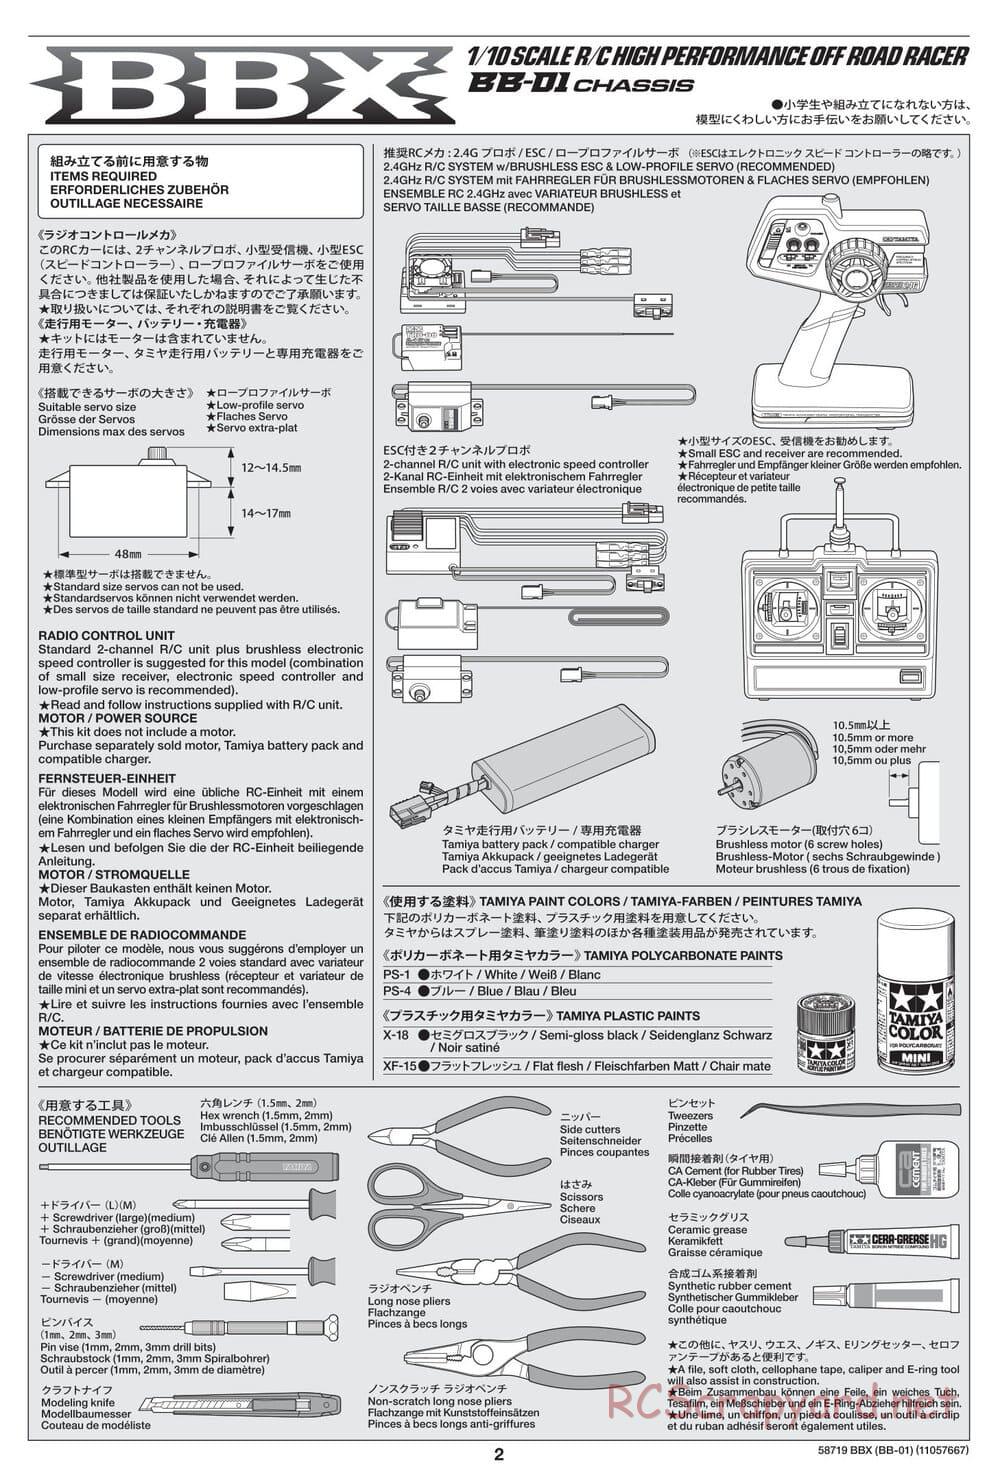 Tamiya - BBX - BB-01 Chassis - Manual - Page 2